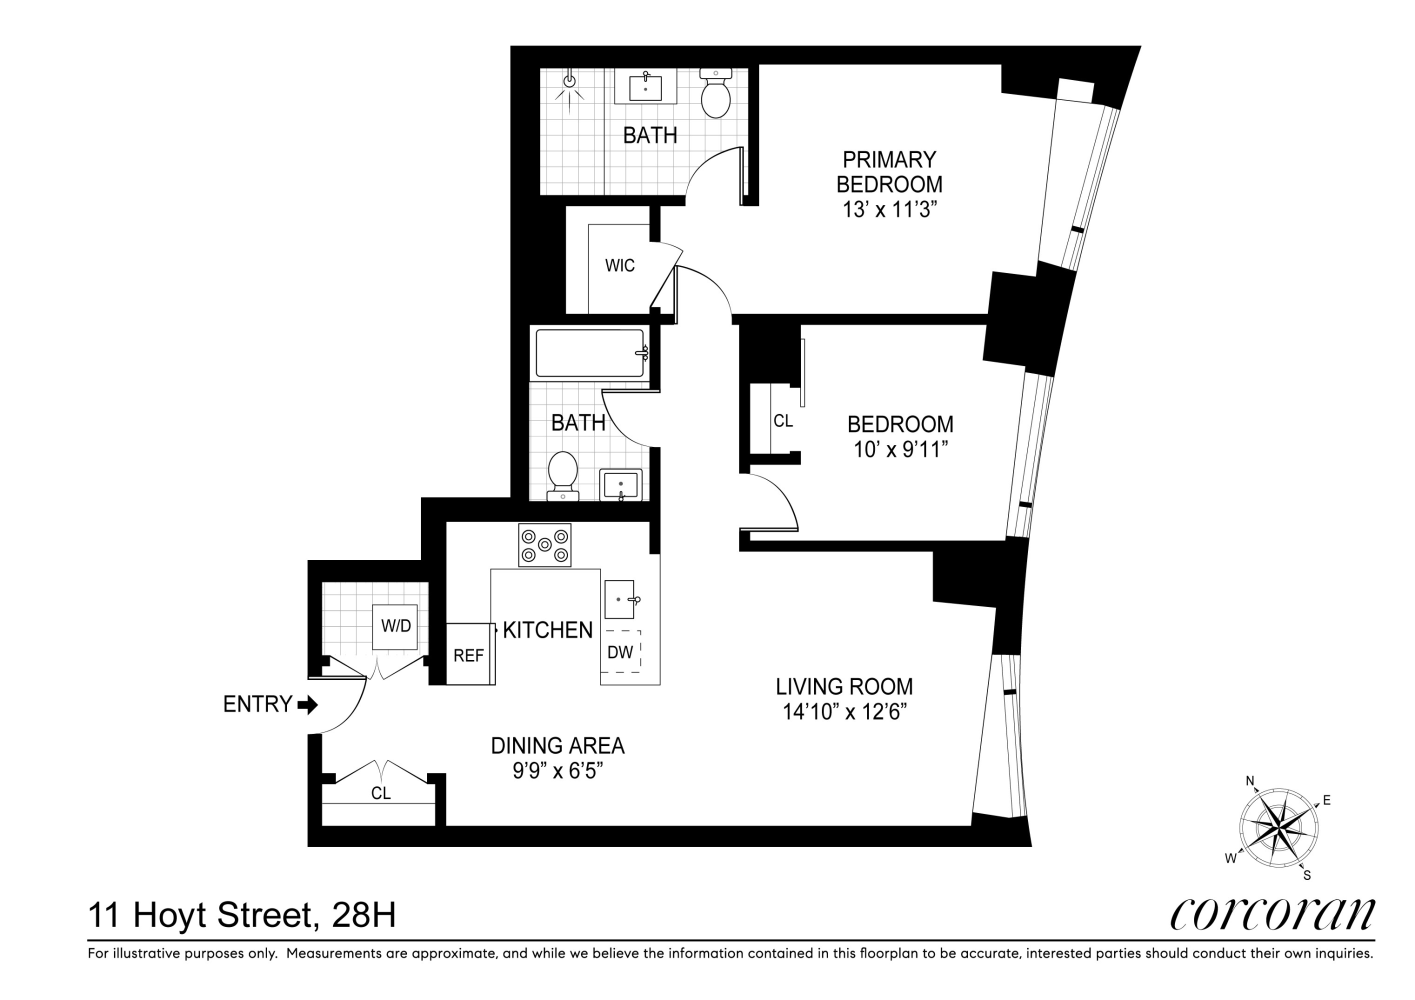 Floorplan for 11 Hoyt Street, 28H